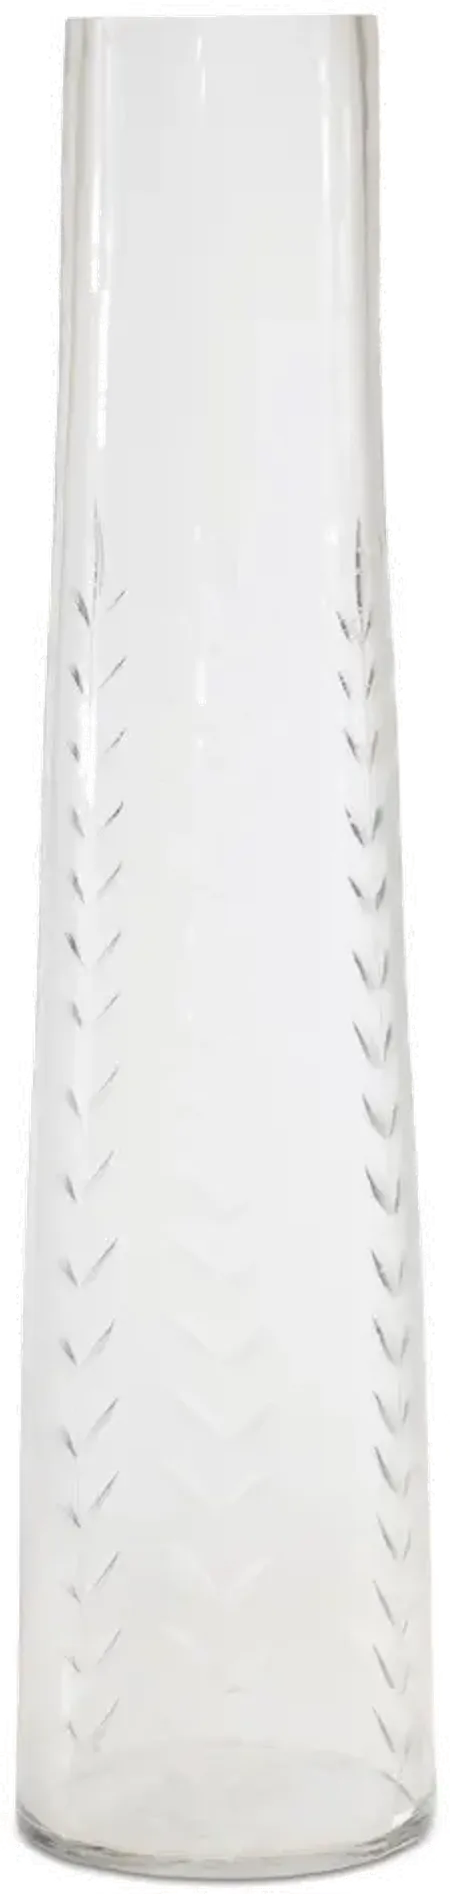 11 Inch White Glass Vase